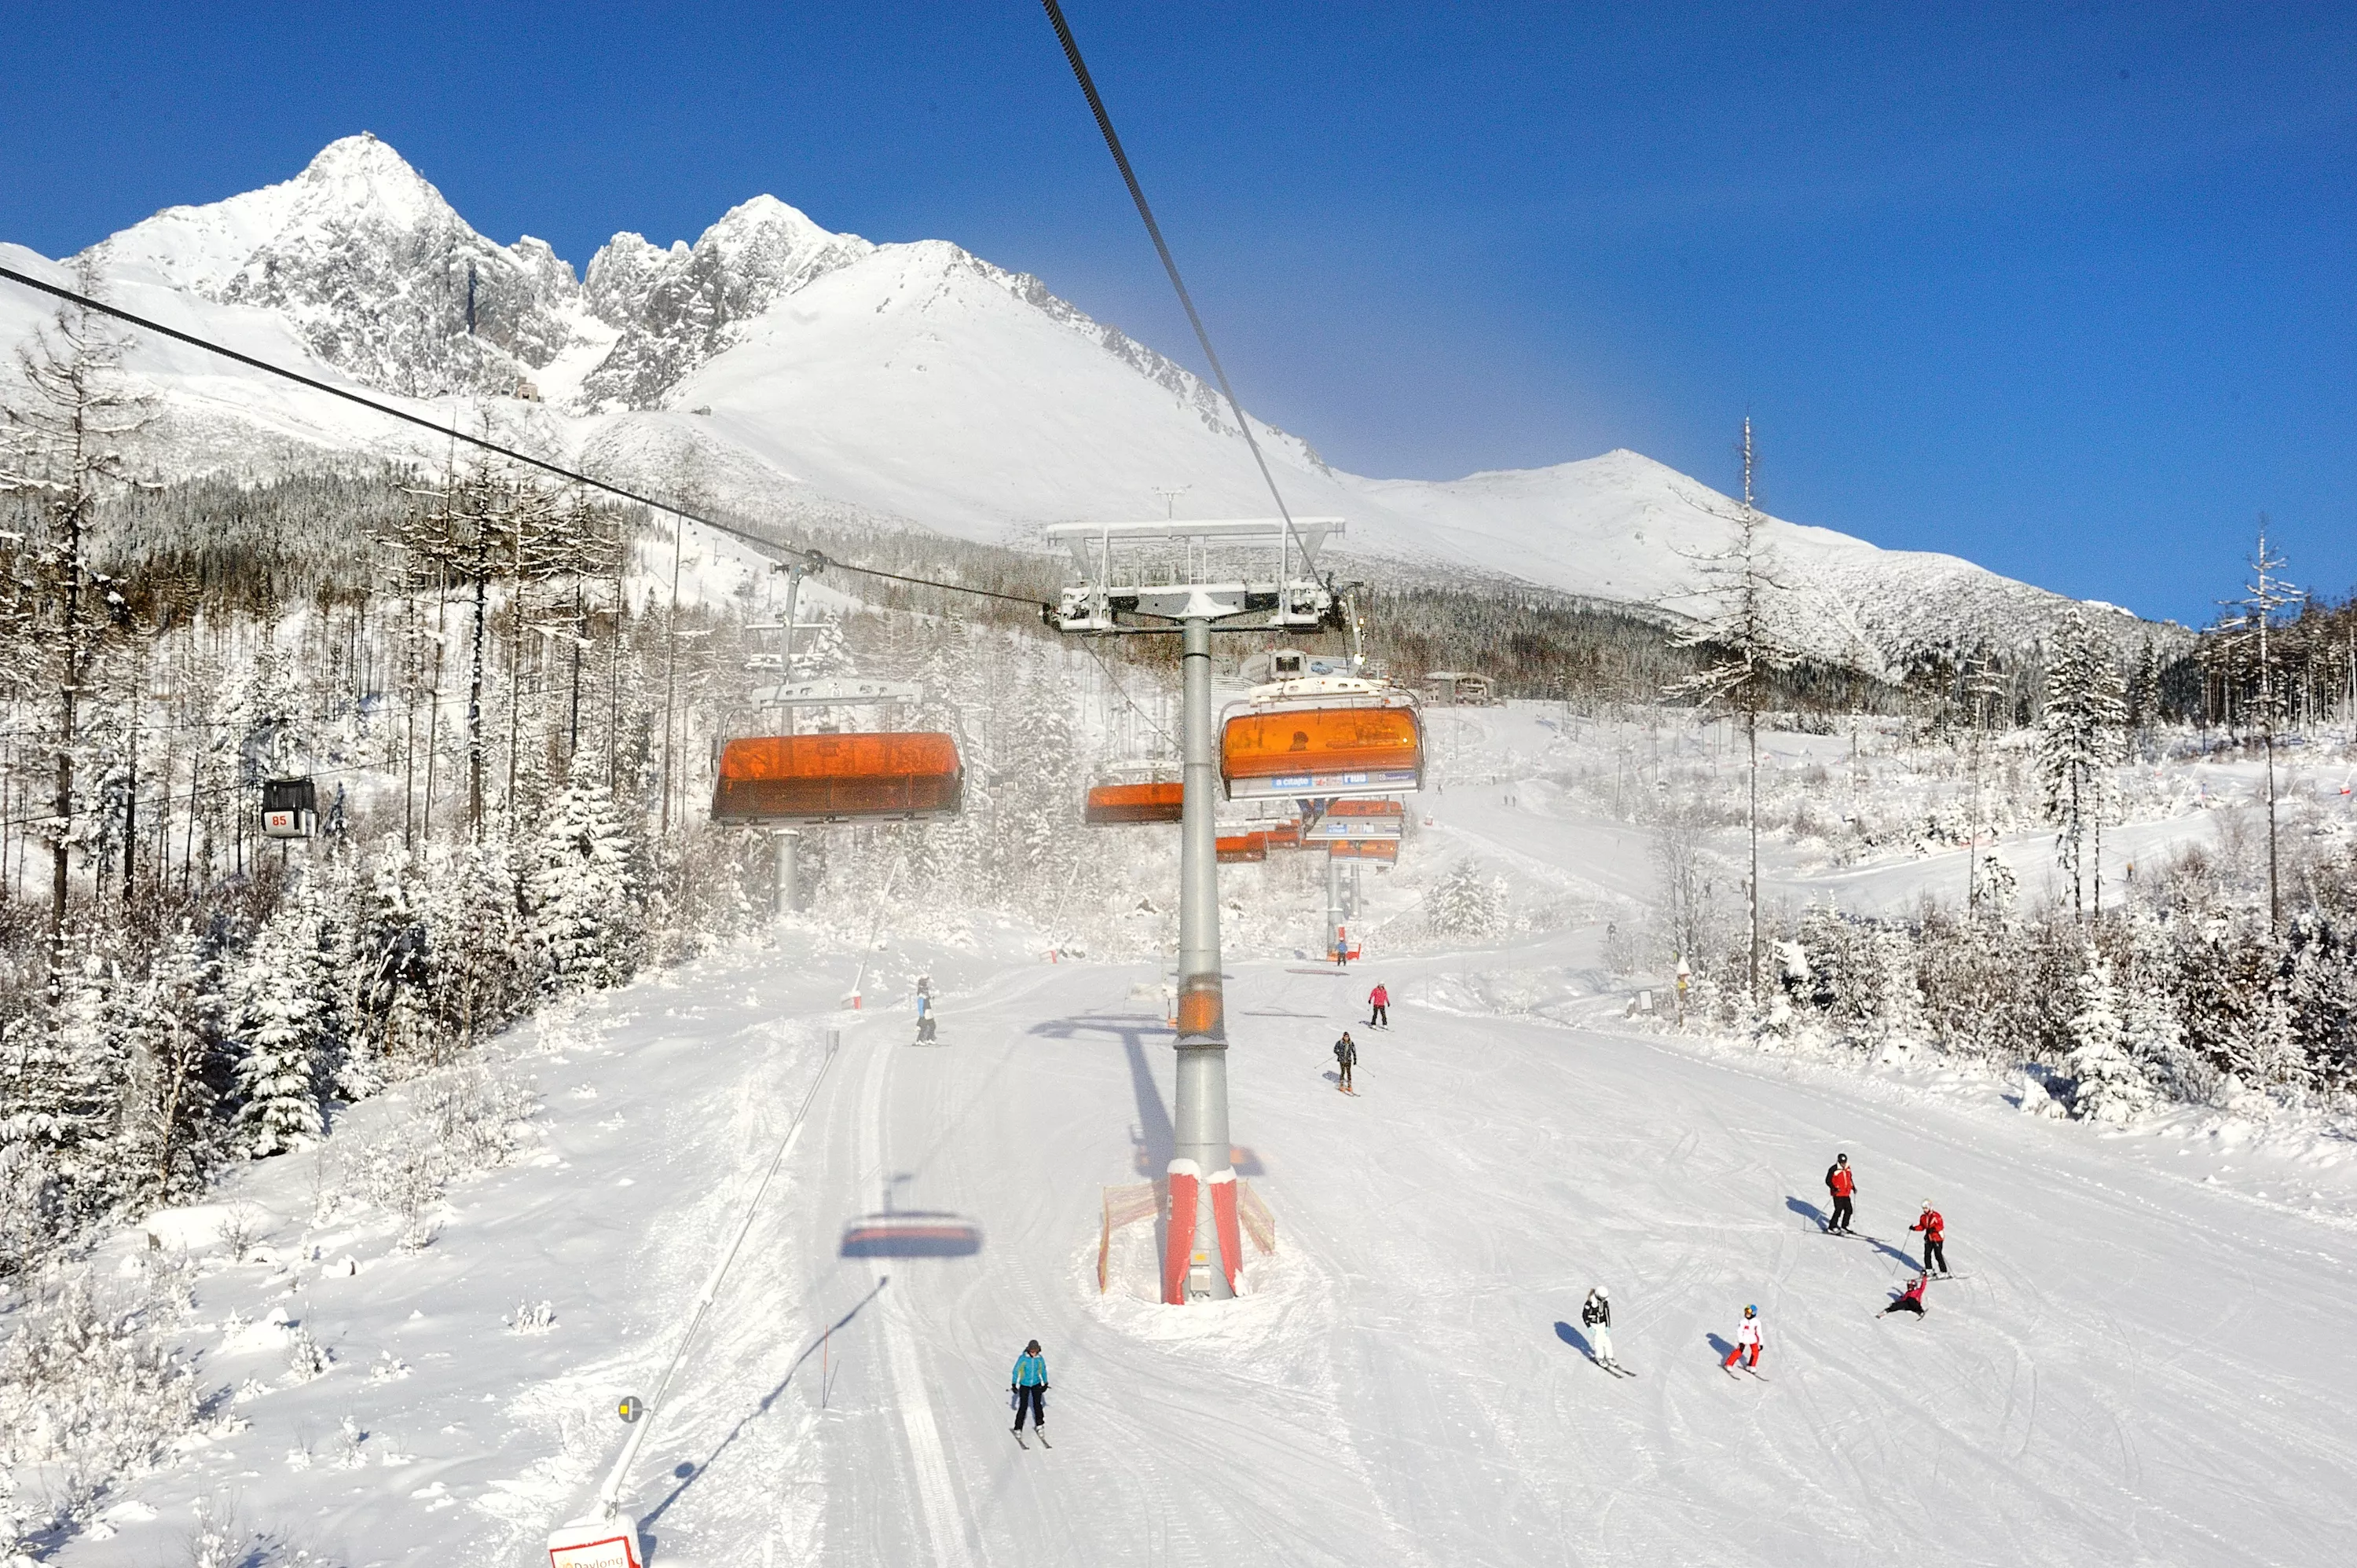 Strbske Pleso Ski Resort in Slovakia, Europe | Snowboarding,Skiing - Rated 4.3